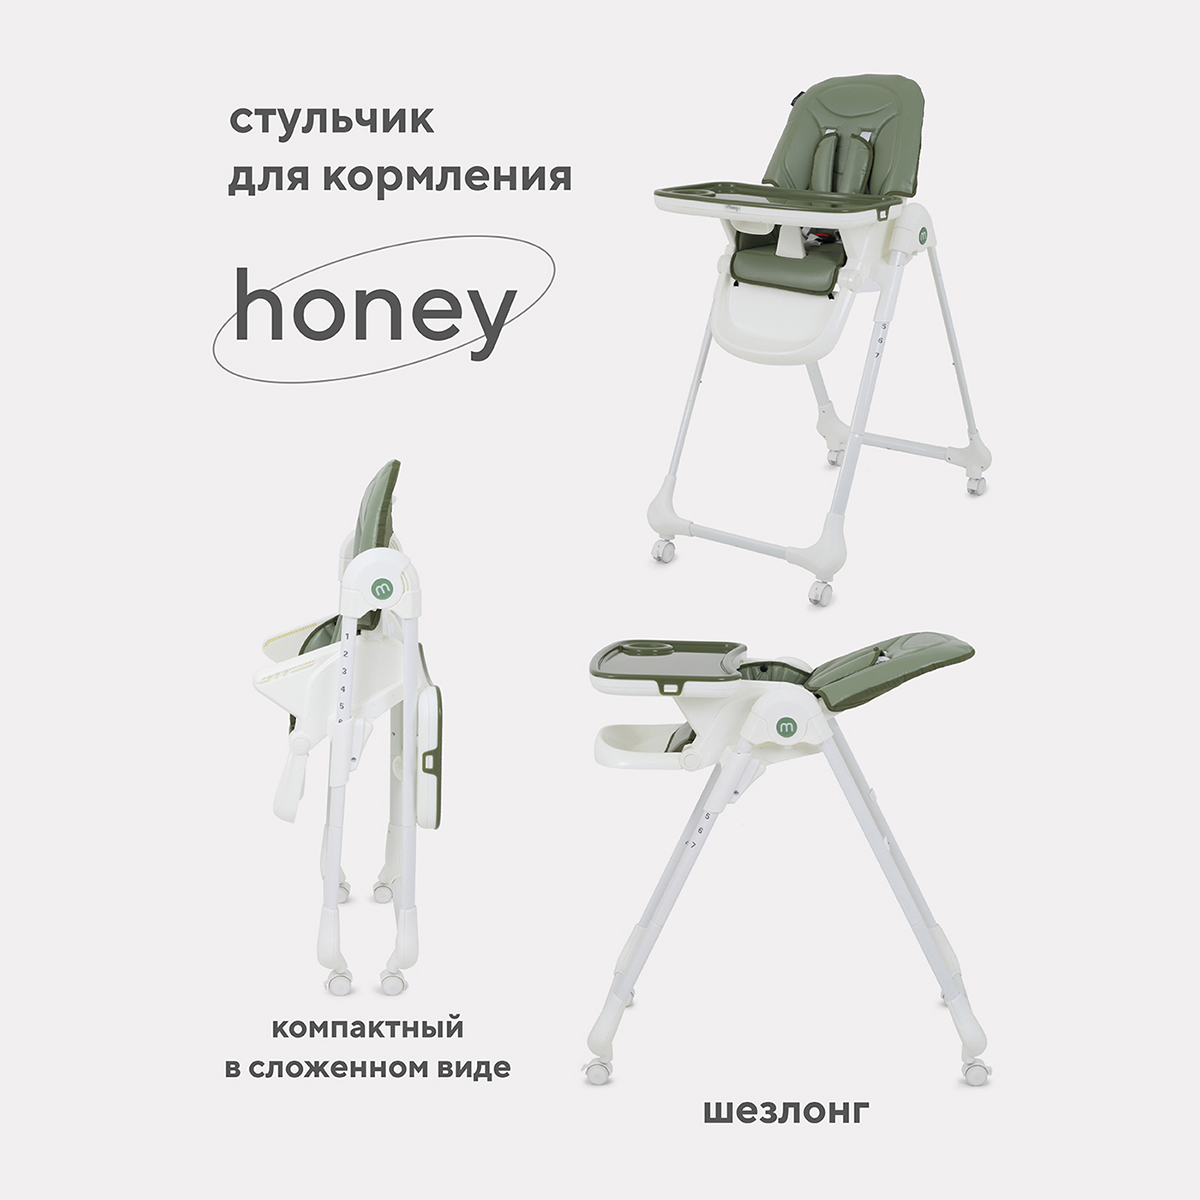 Стульчик для кормления MOWBaby HONEY от 6 месяцев RH600 green стульчик для кормления mowbaby honey green